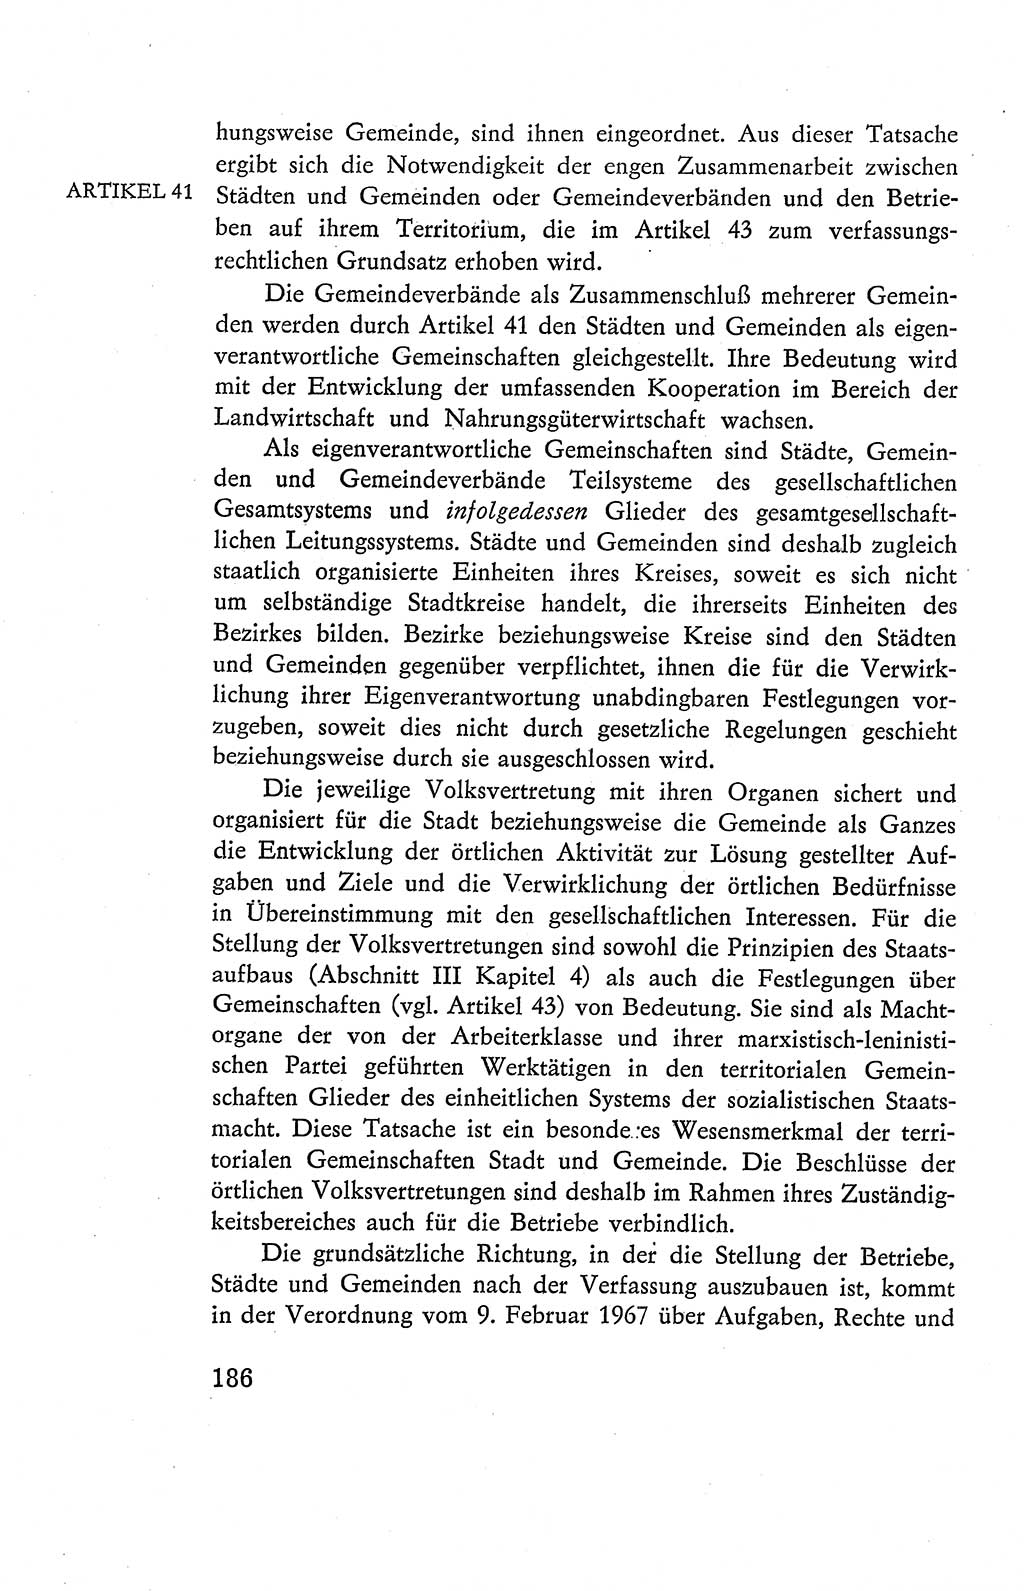 Verfassung der Deutschen Demokratischen Republik (DDR), Dokumente, Kommentar 1969, Band 2, Seite 186 (Verf. DDR Dok. Komm. 1969, Bd. 2, S. 186)